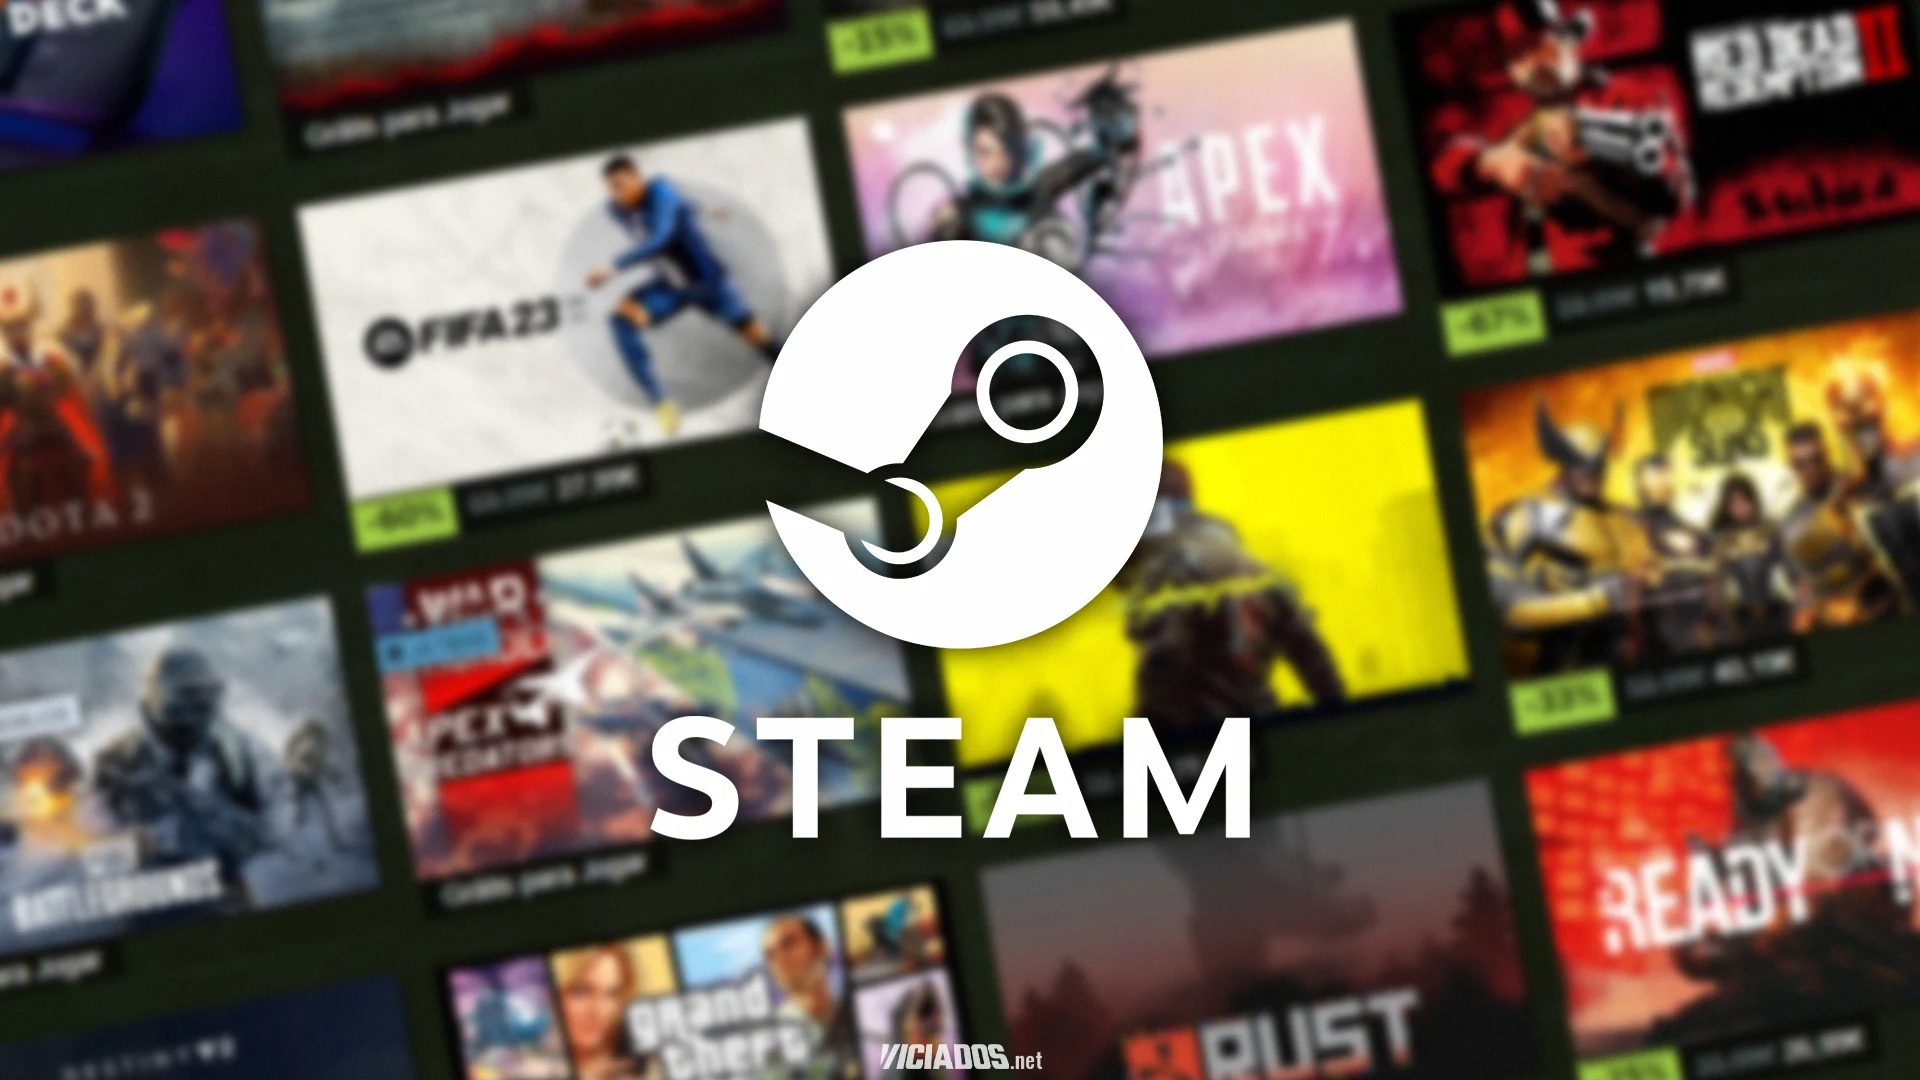 Steam | Popular jogo de terror está saindo por apenas 20 reais por tempo limitado 2023 Viciados